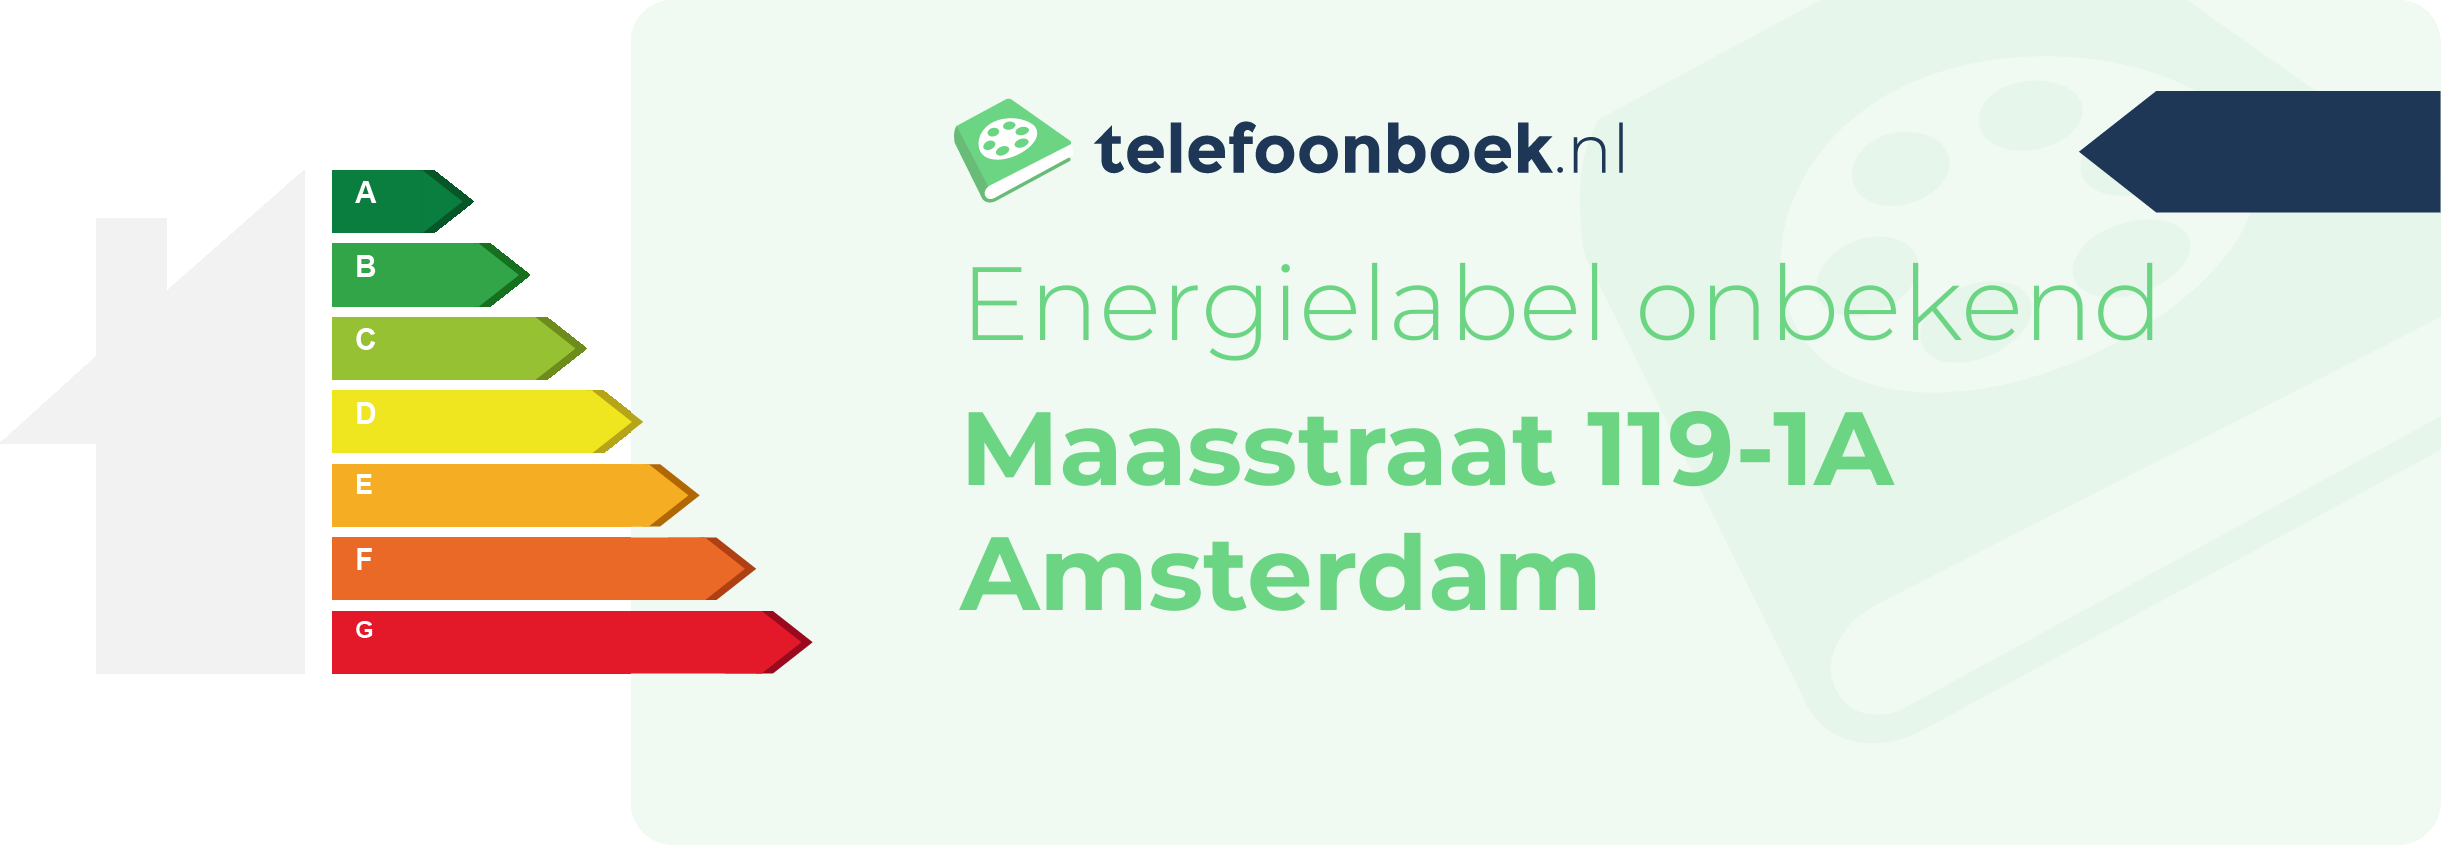 Energielabel Maasstraat 119-1A Amsterdam